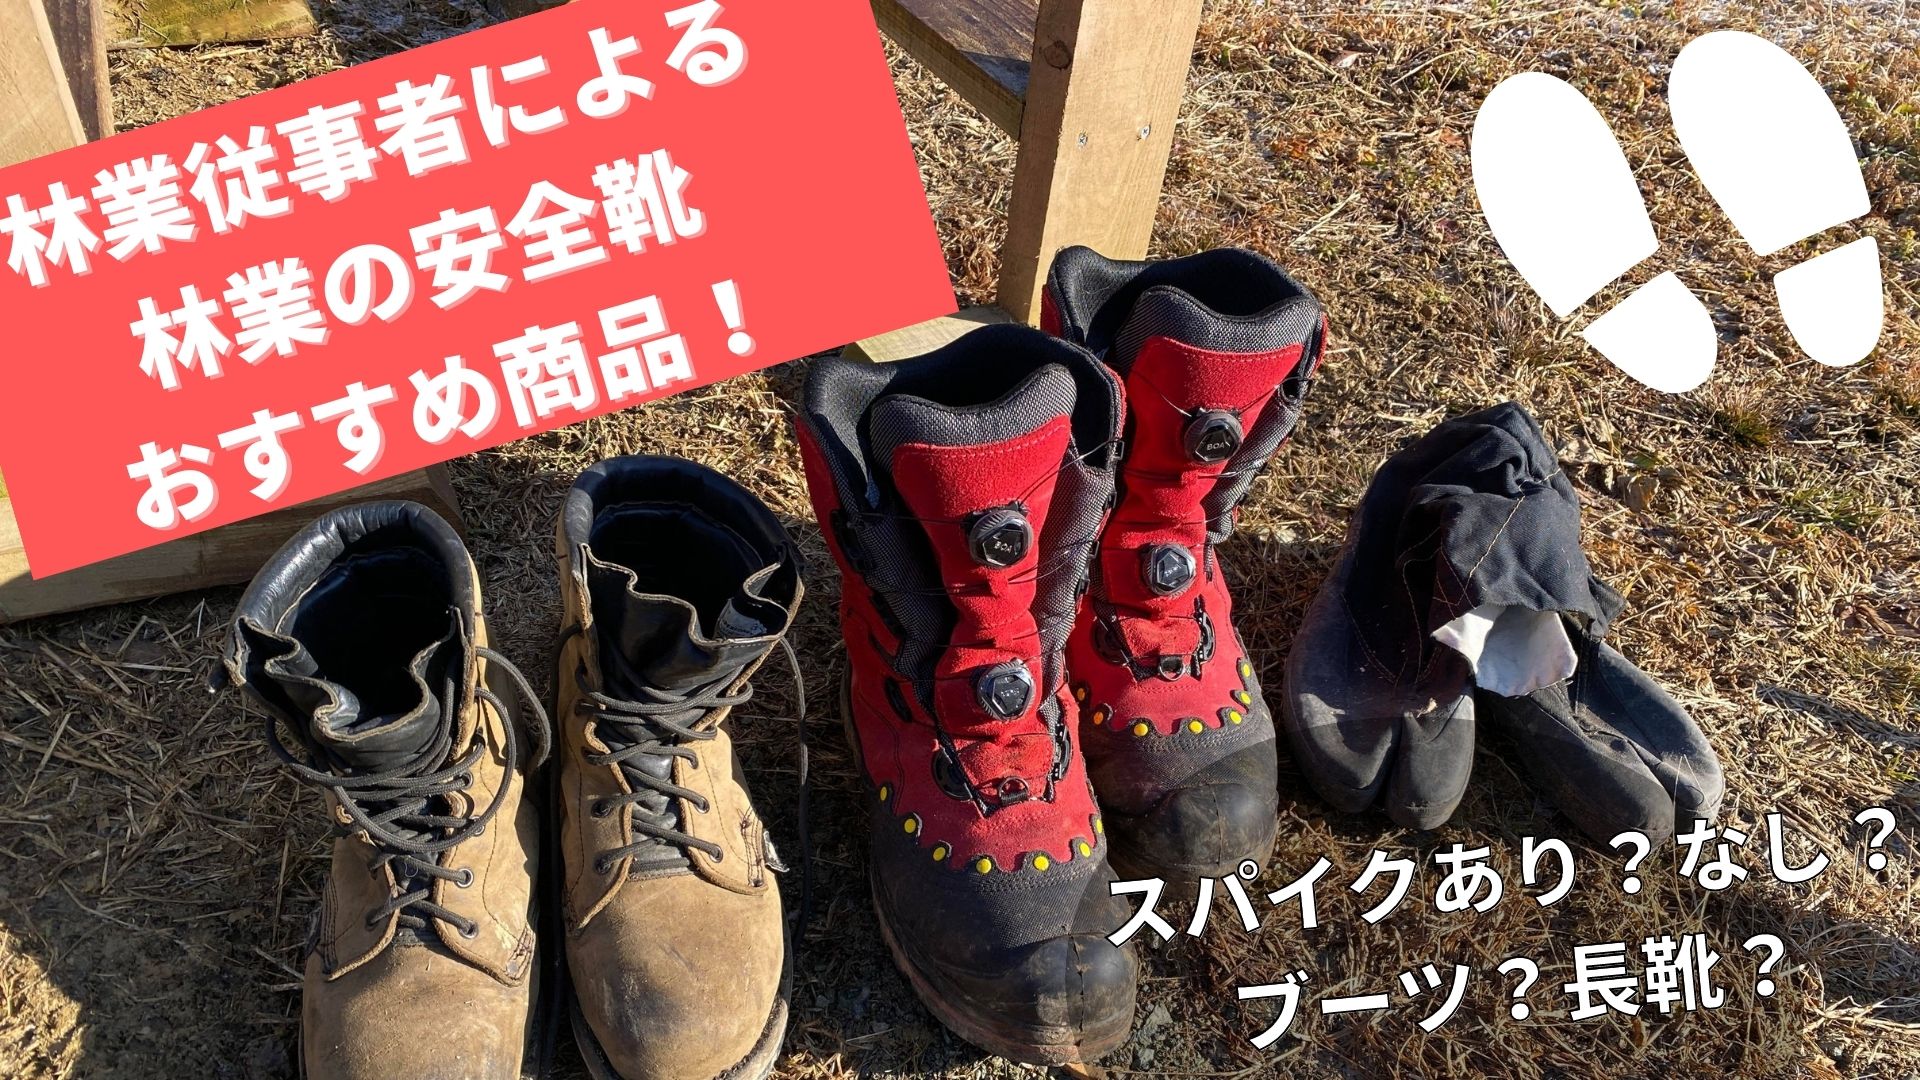 スチール ダイナミック GTX 革製チェンソーブーツ - ブーツ(男性用)